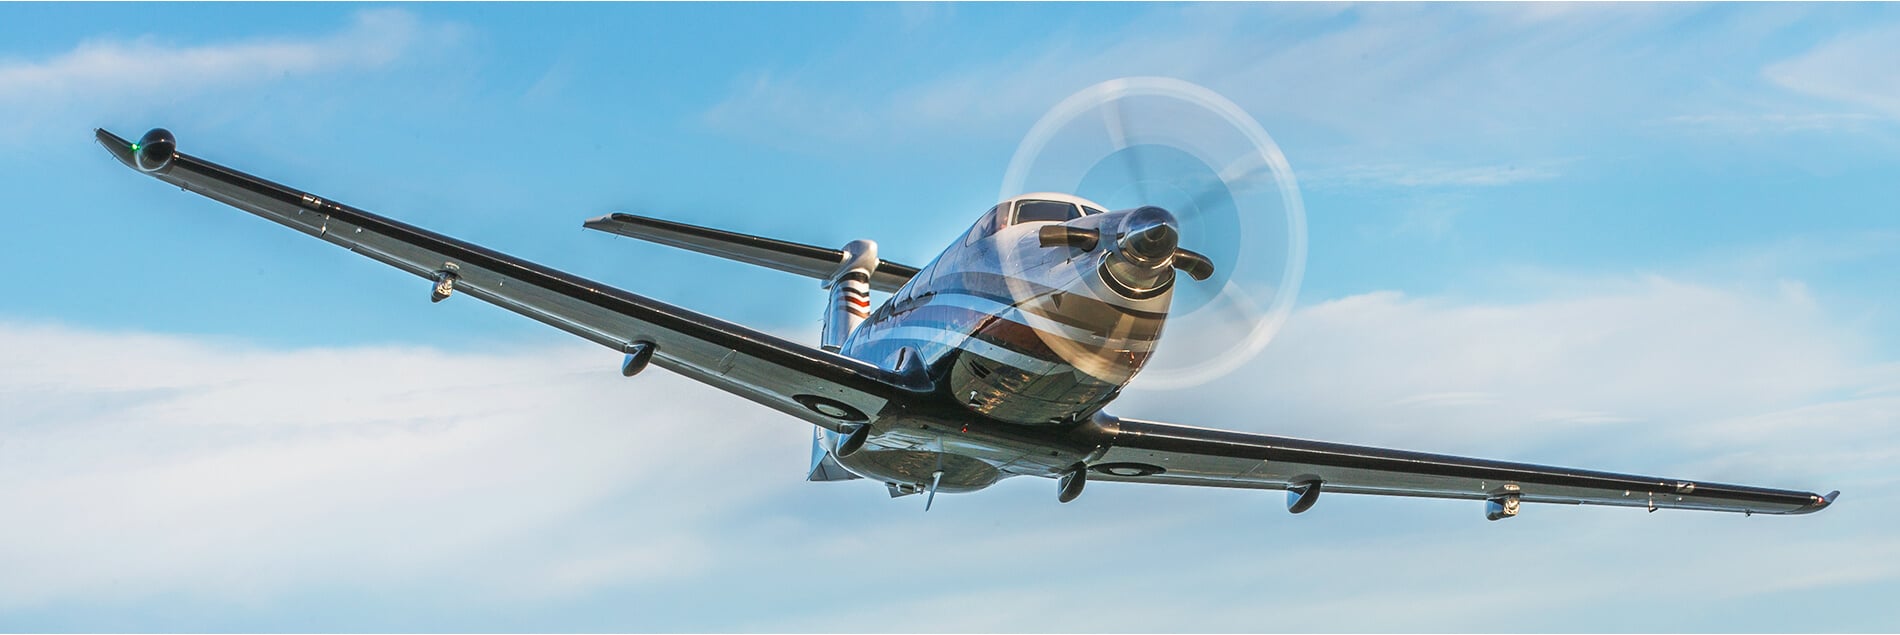 Pilatus PC-12 Aerial